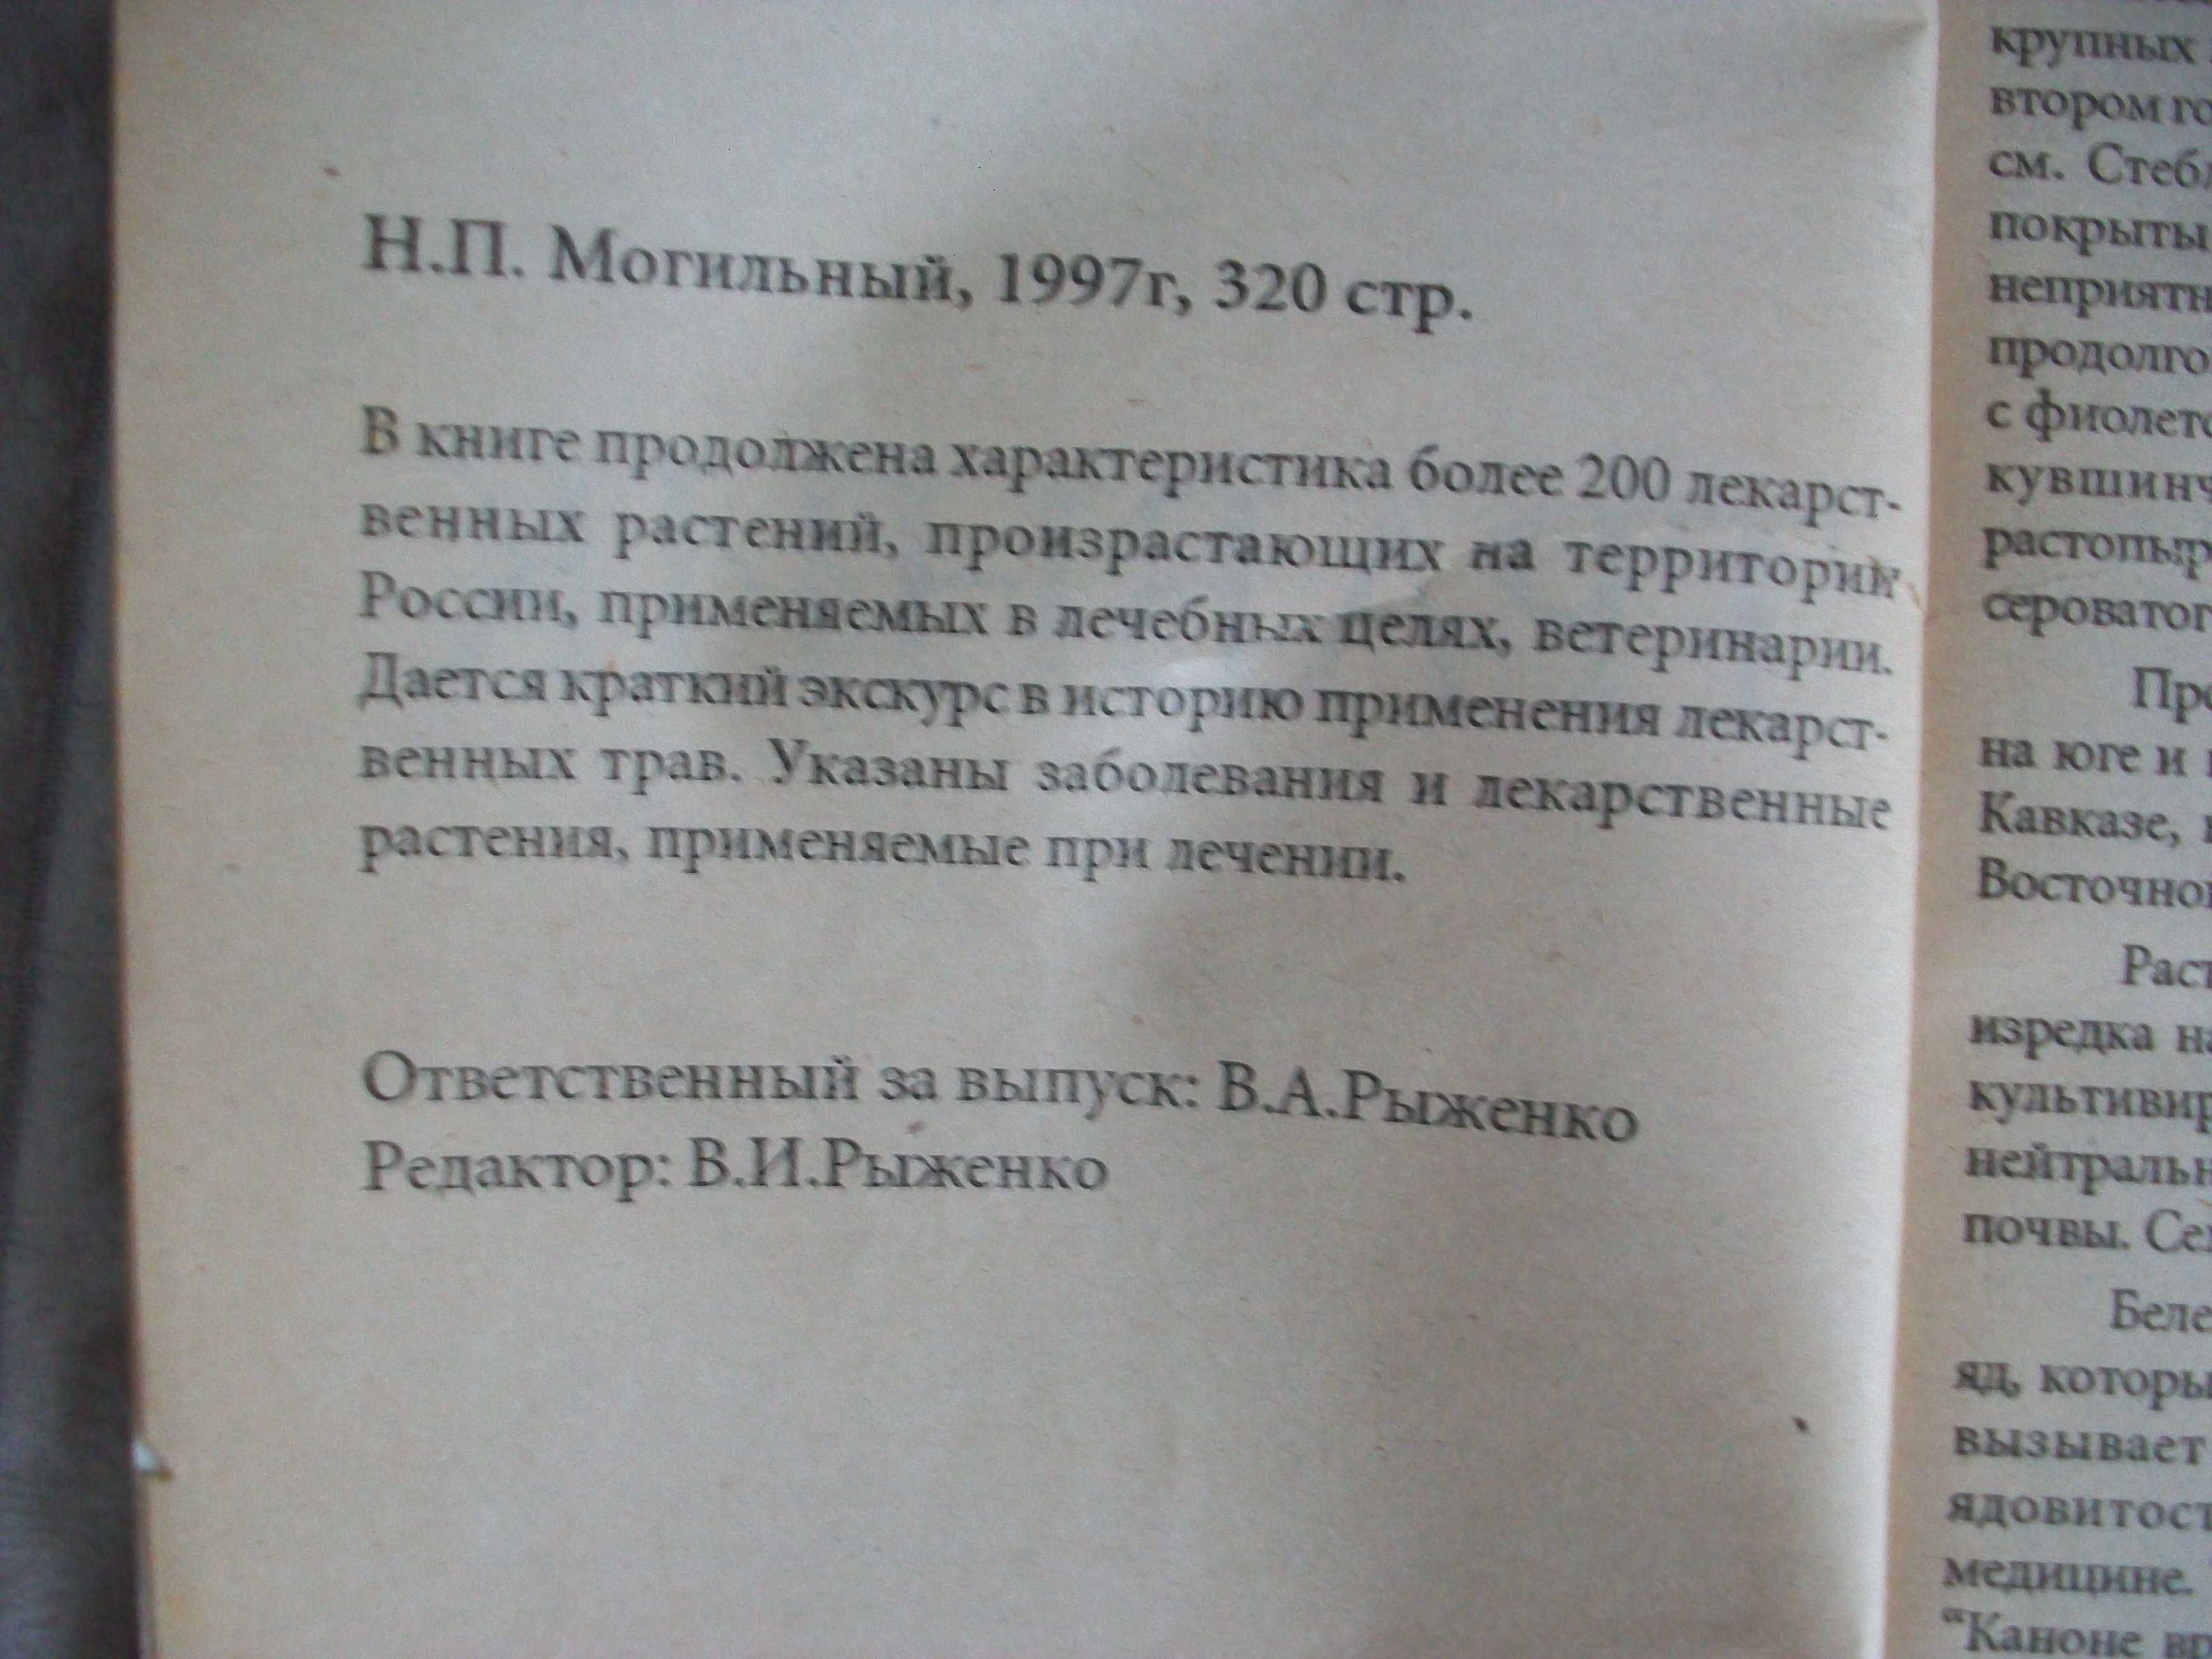 Книга "Травник", автор Могильный